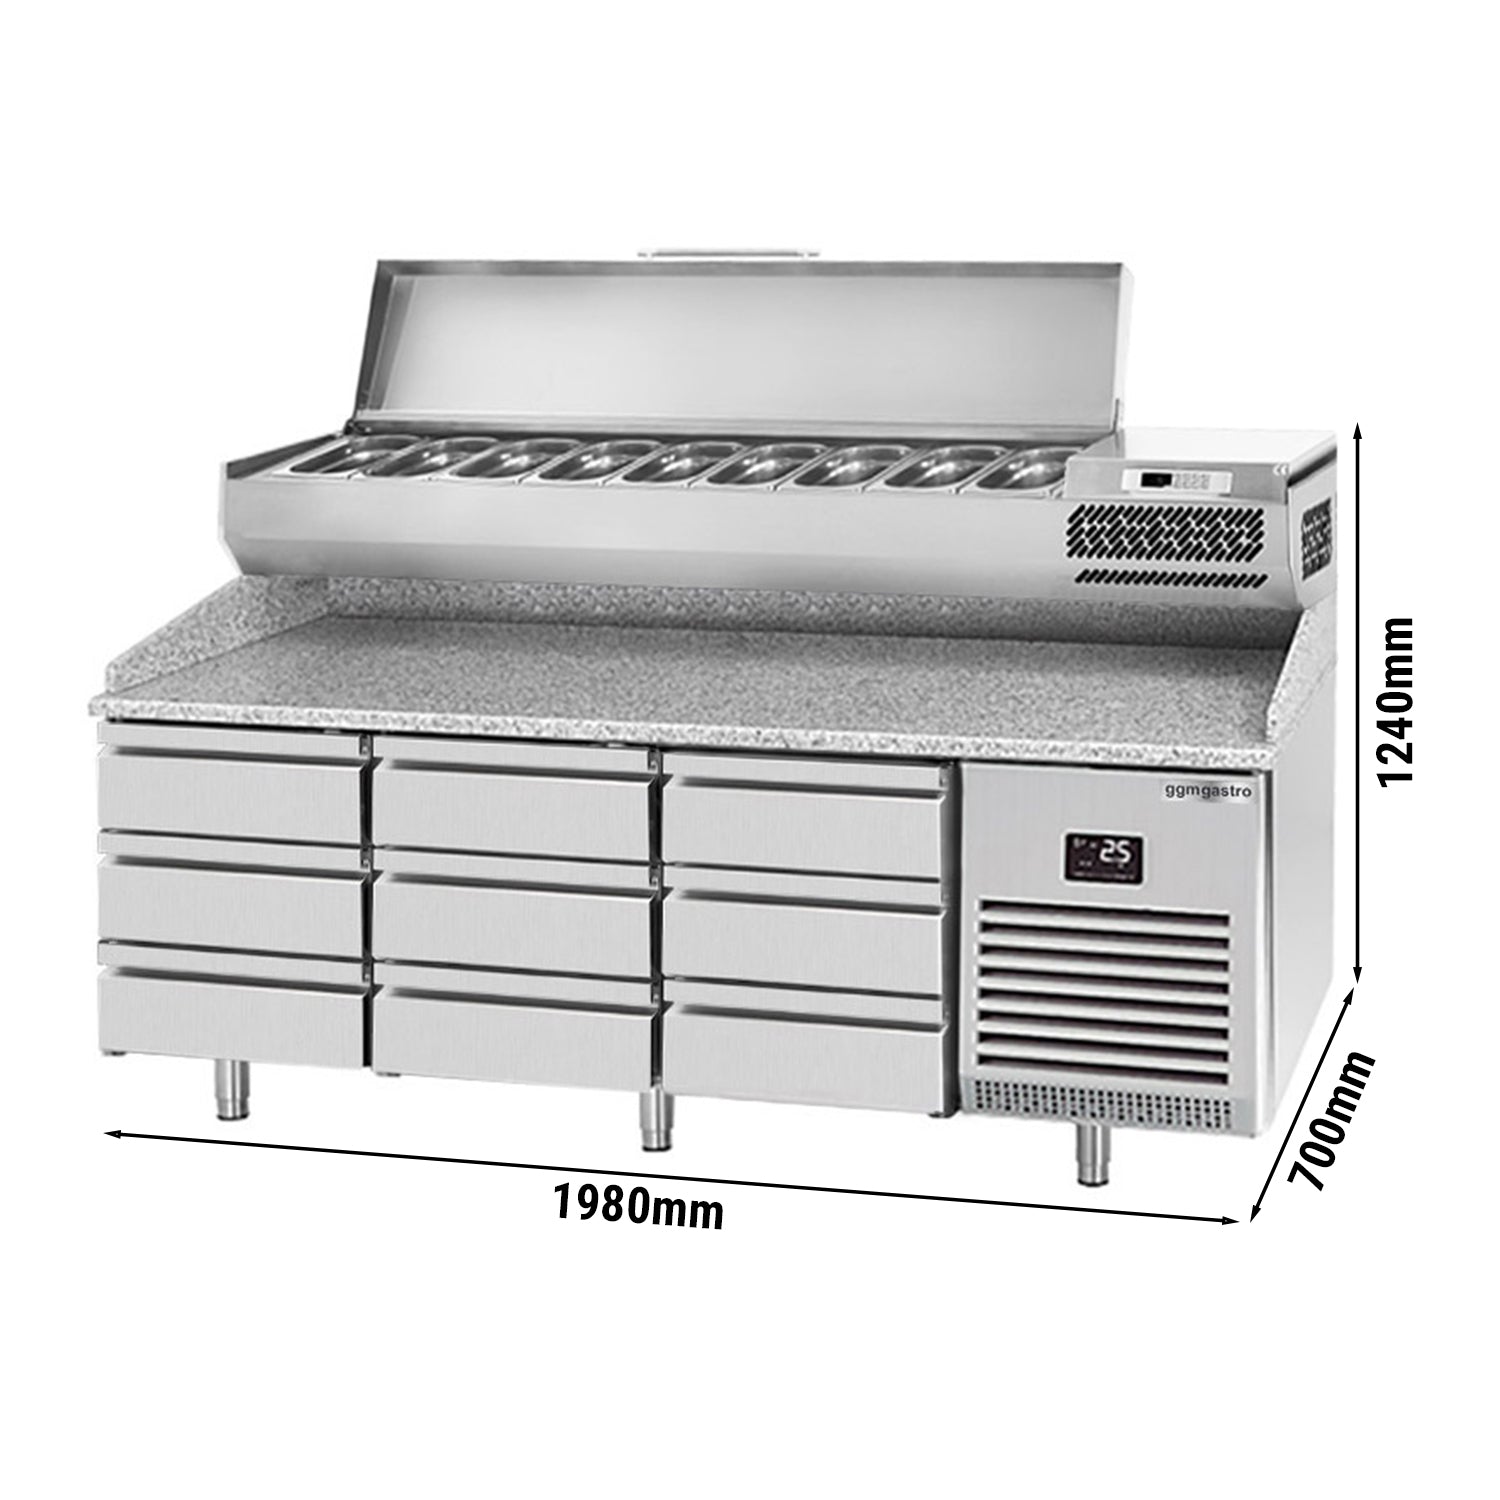 Охладителна маса за пица (GN) - с 9 чекмеджета 1/3 (GN 1/1) и охлаждаща горна витрина за 9x GN 1/4 контейнера